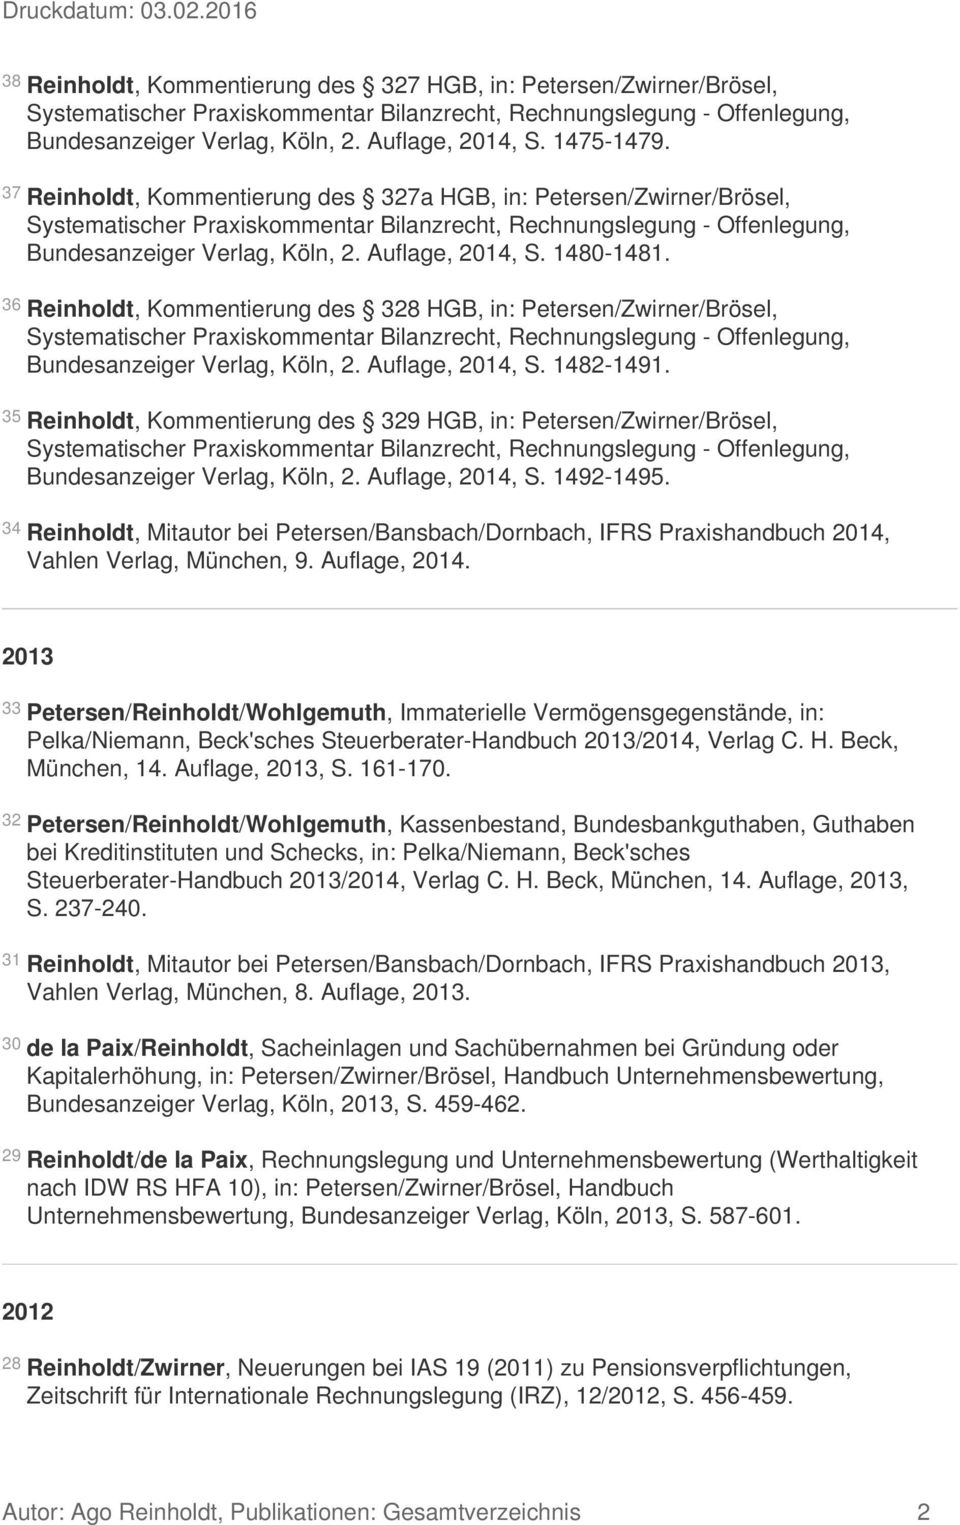 36 Reinholdt, Kommentierung des 328 HGB, in: Petersen/Zwirner/Brösel, Bundesanzeiger Verlag, Köln, 2. Auflage, 2014, S. 1482-1491.